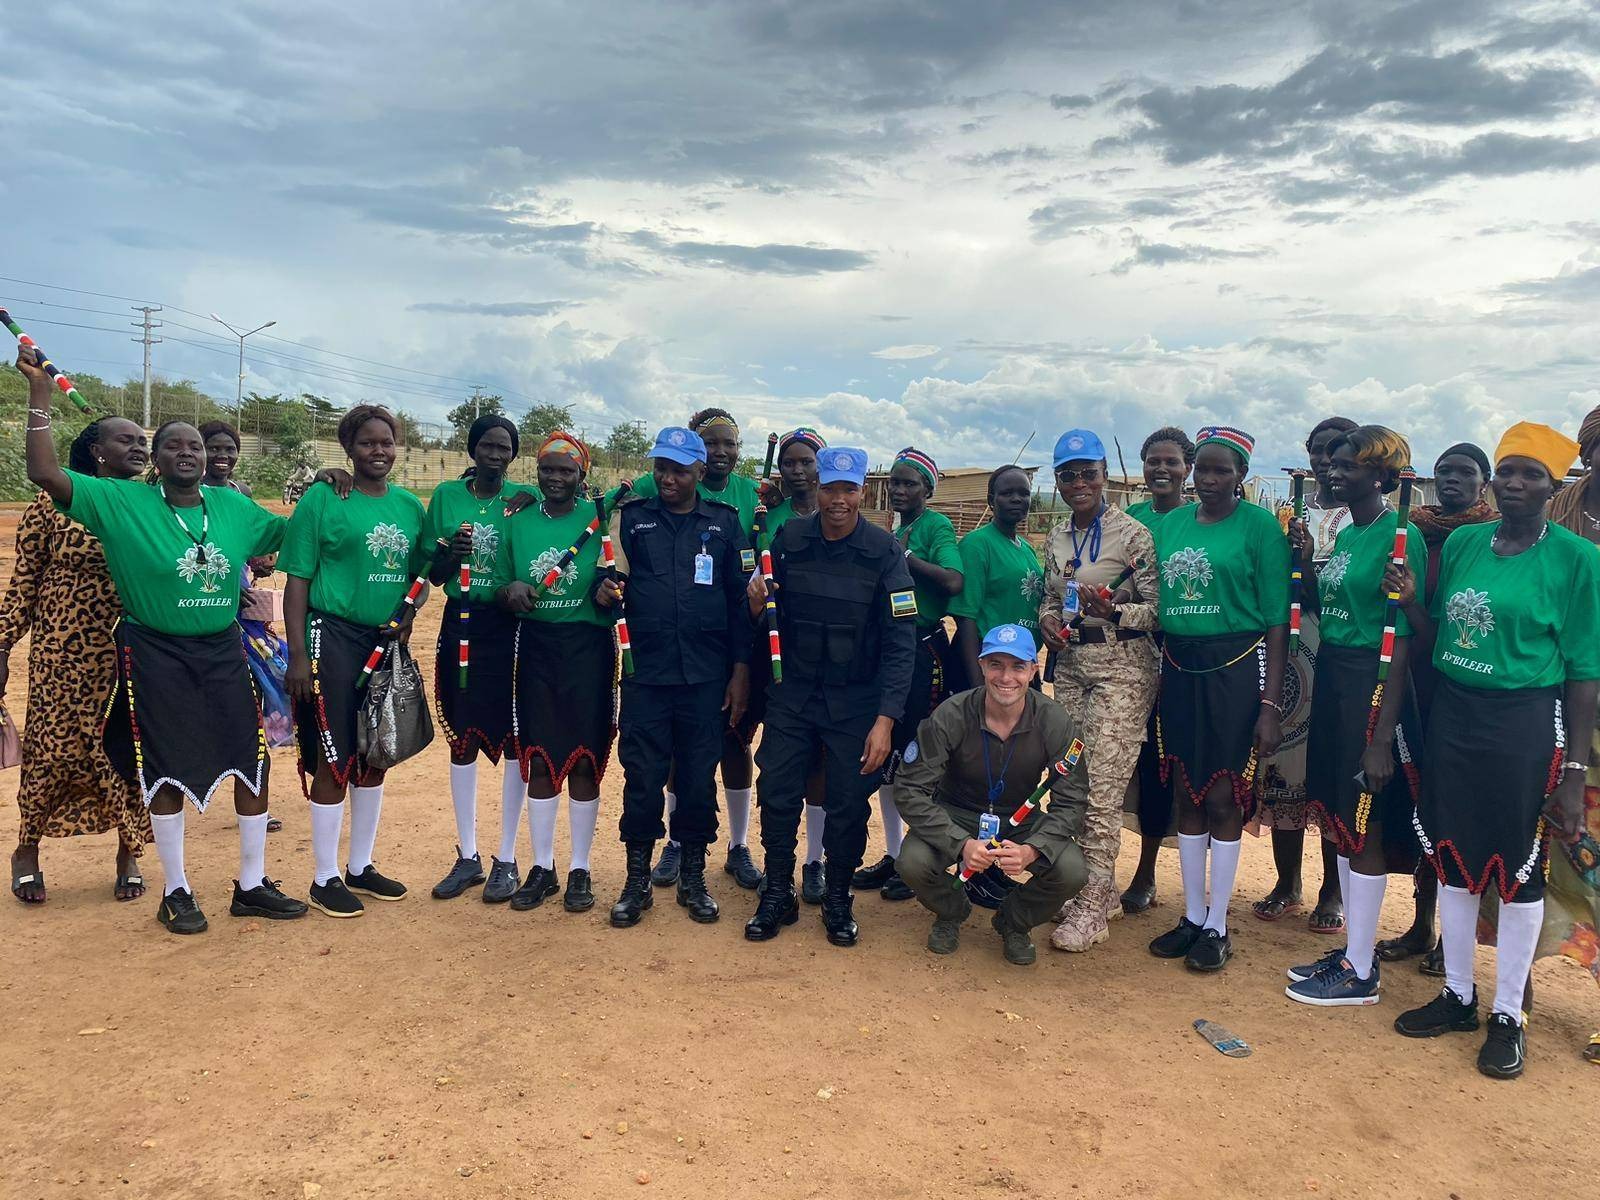 (ФОТО) Молдова направила первого полицейского в миротворческую миссию в Южном Судане